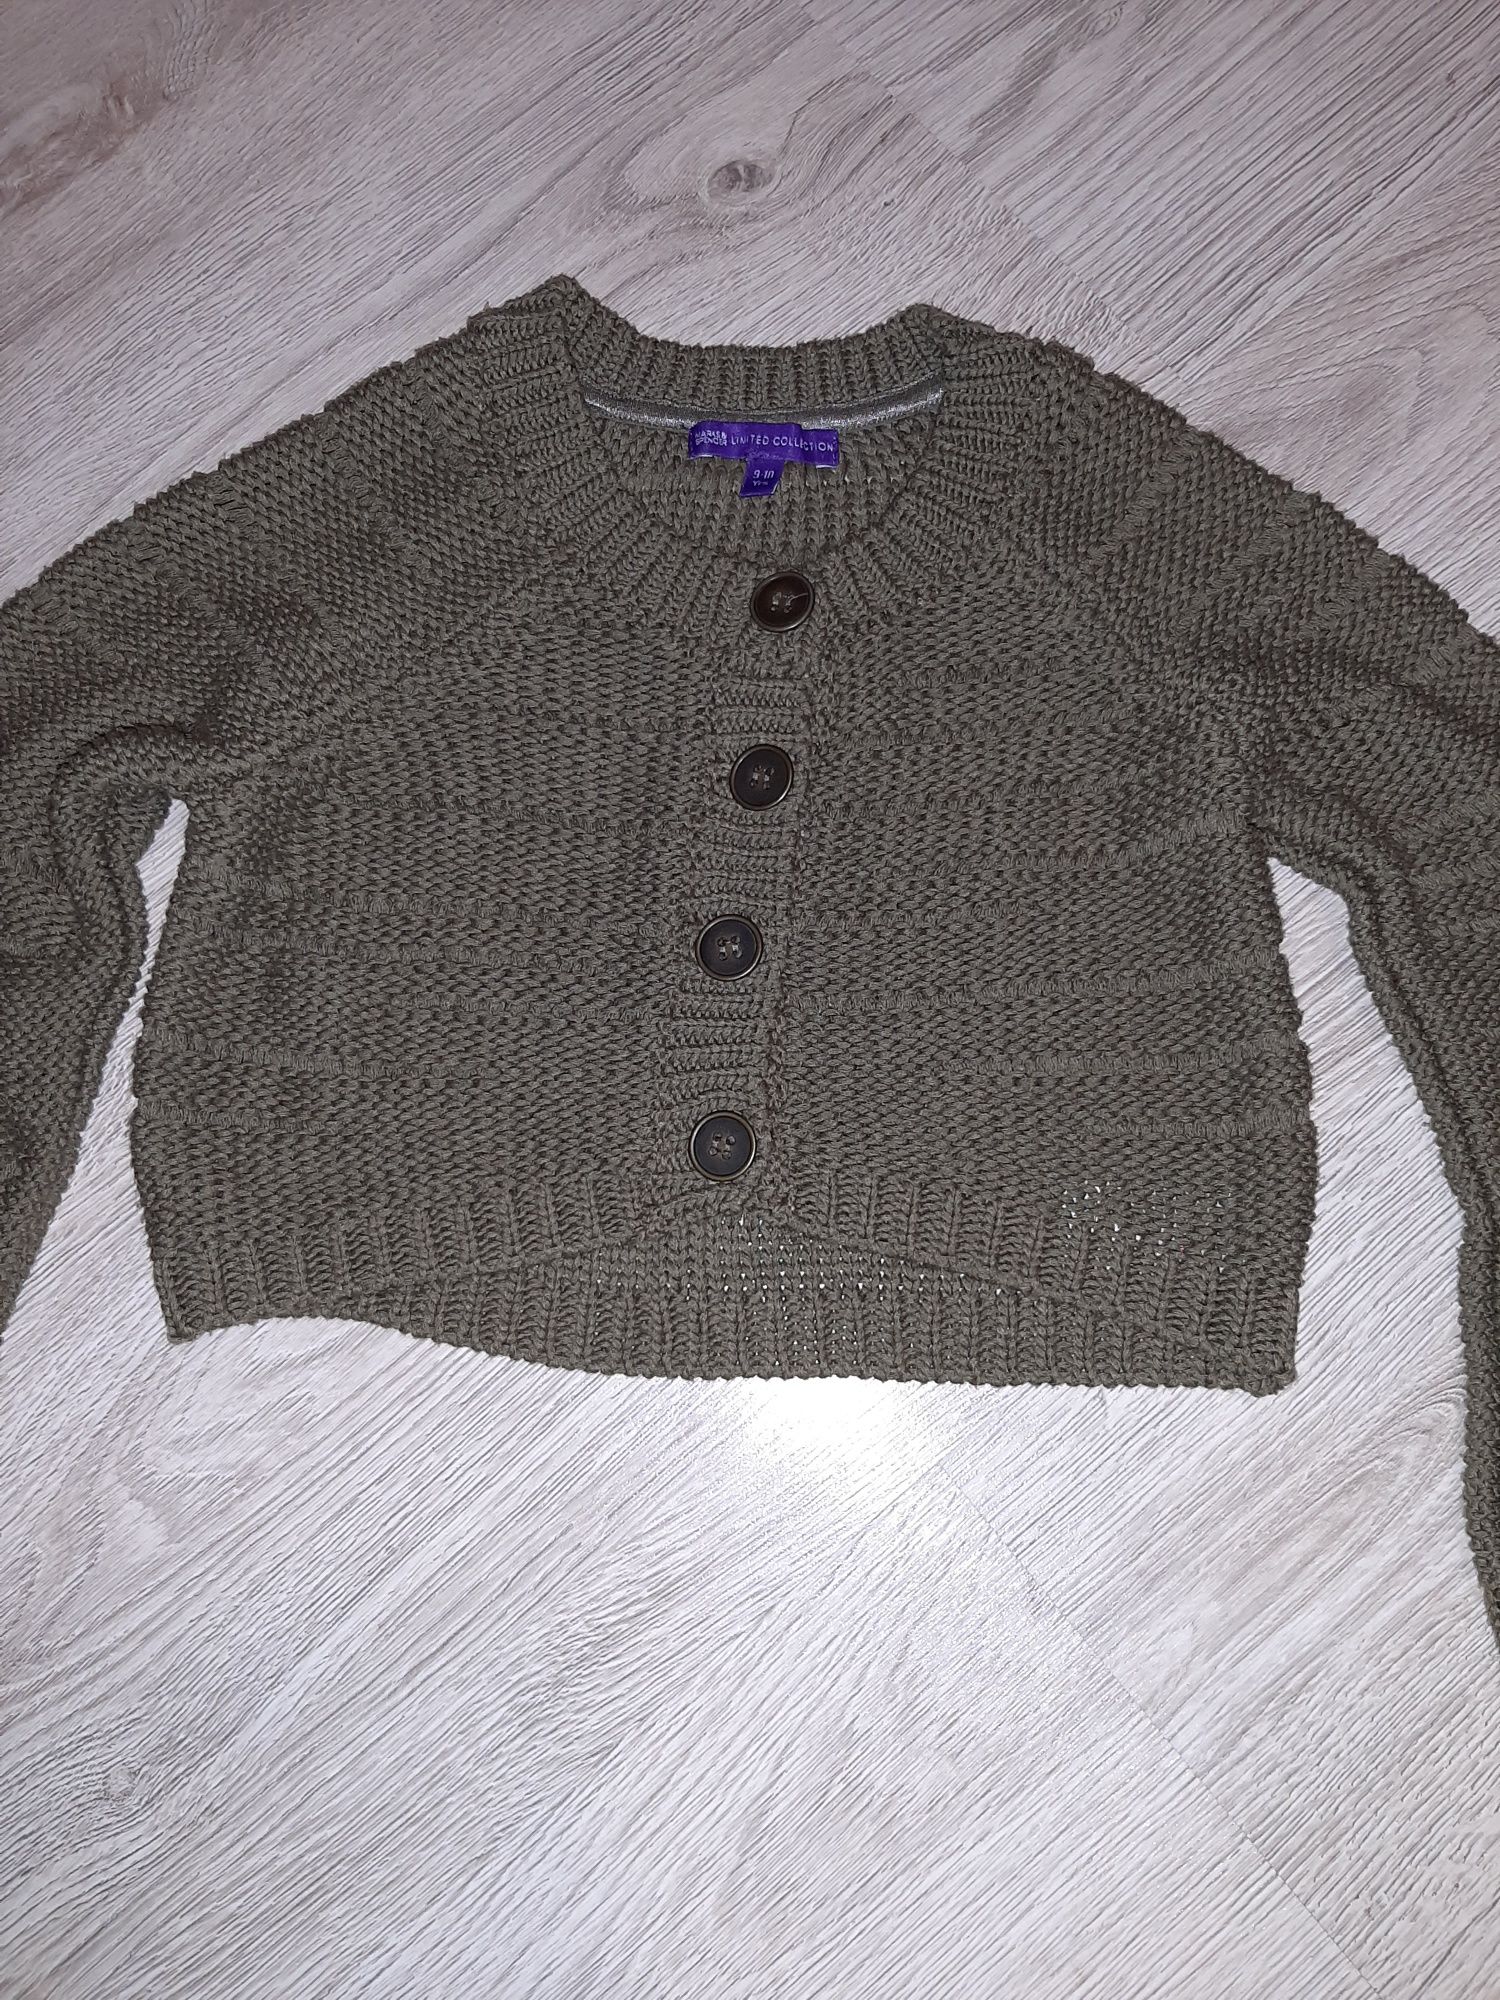 Sweterek krótki z długim rękawem M&S rozm.134/140